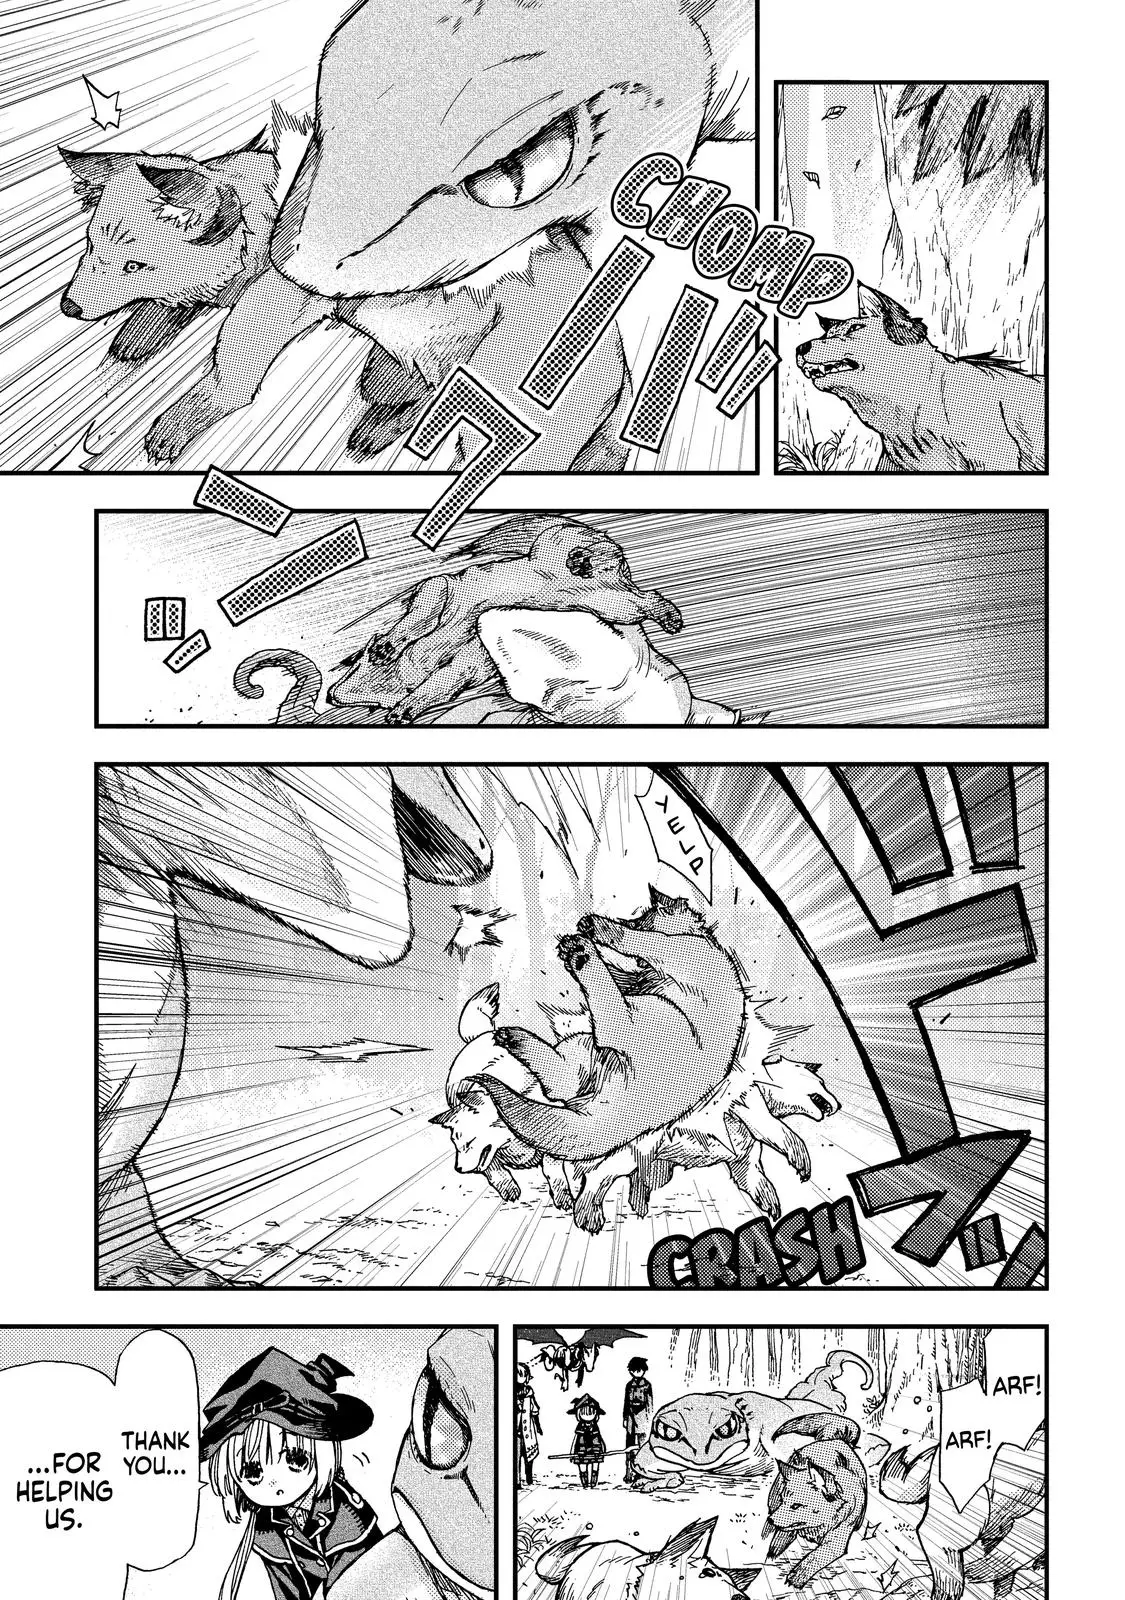 Hone Dragon No Mana Musume - 16 page 17-018b5638